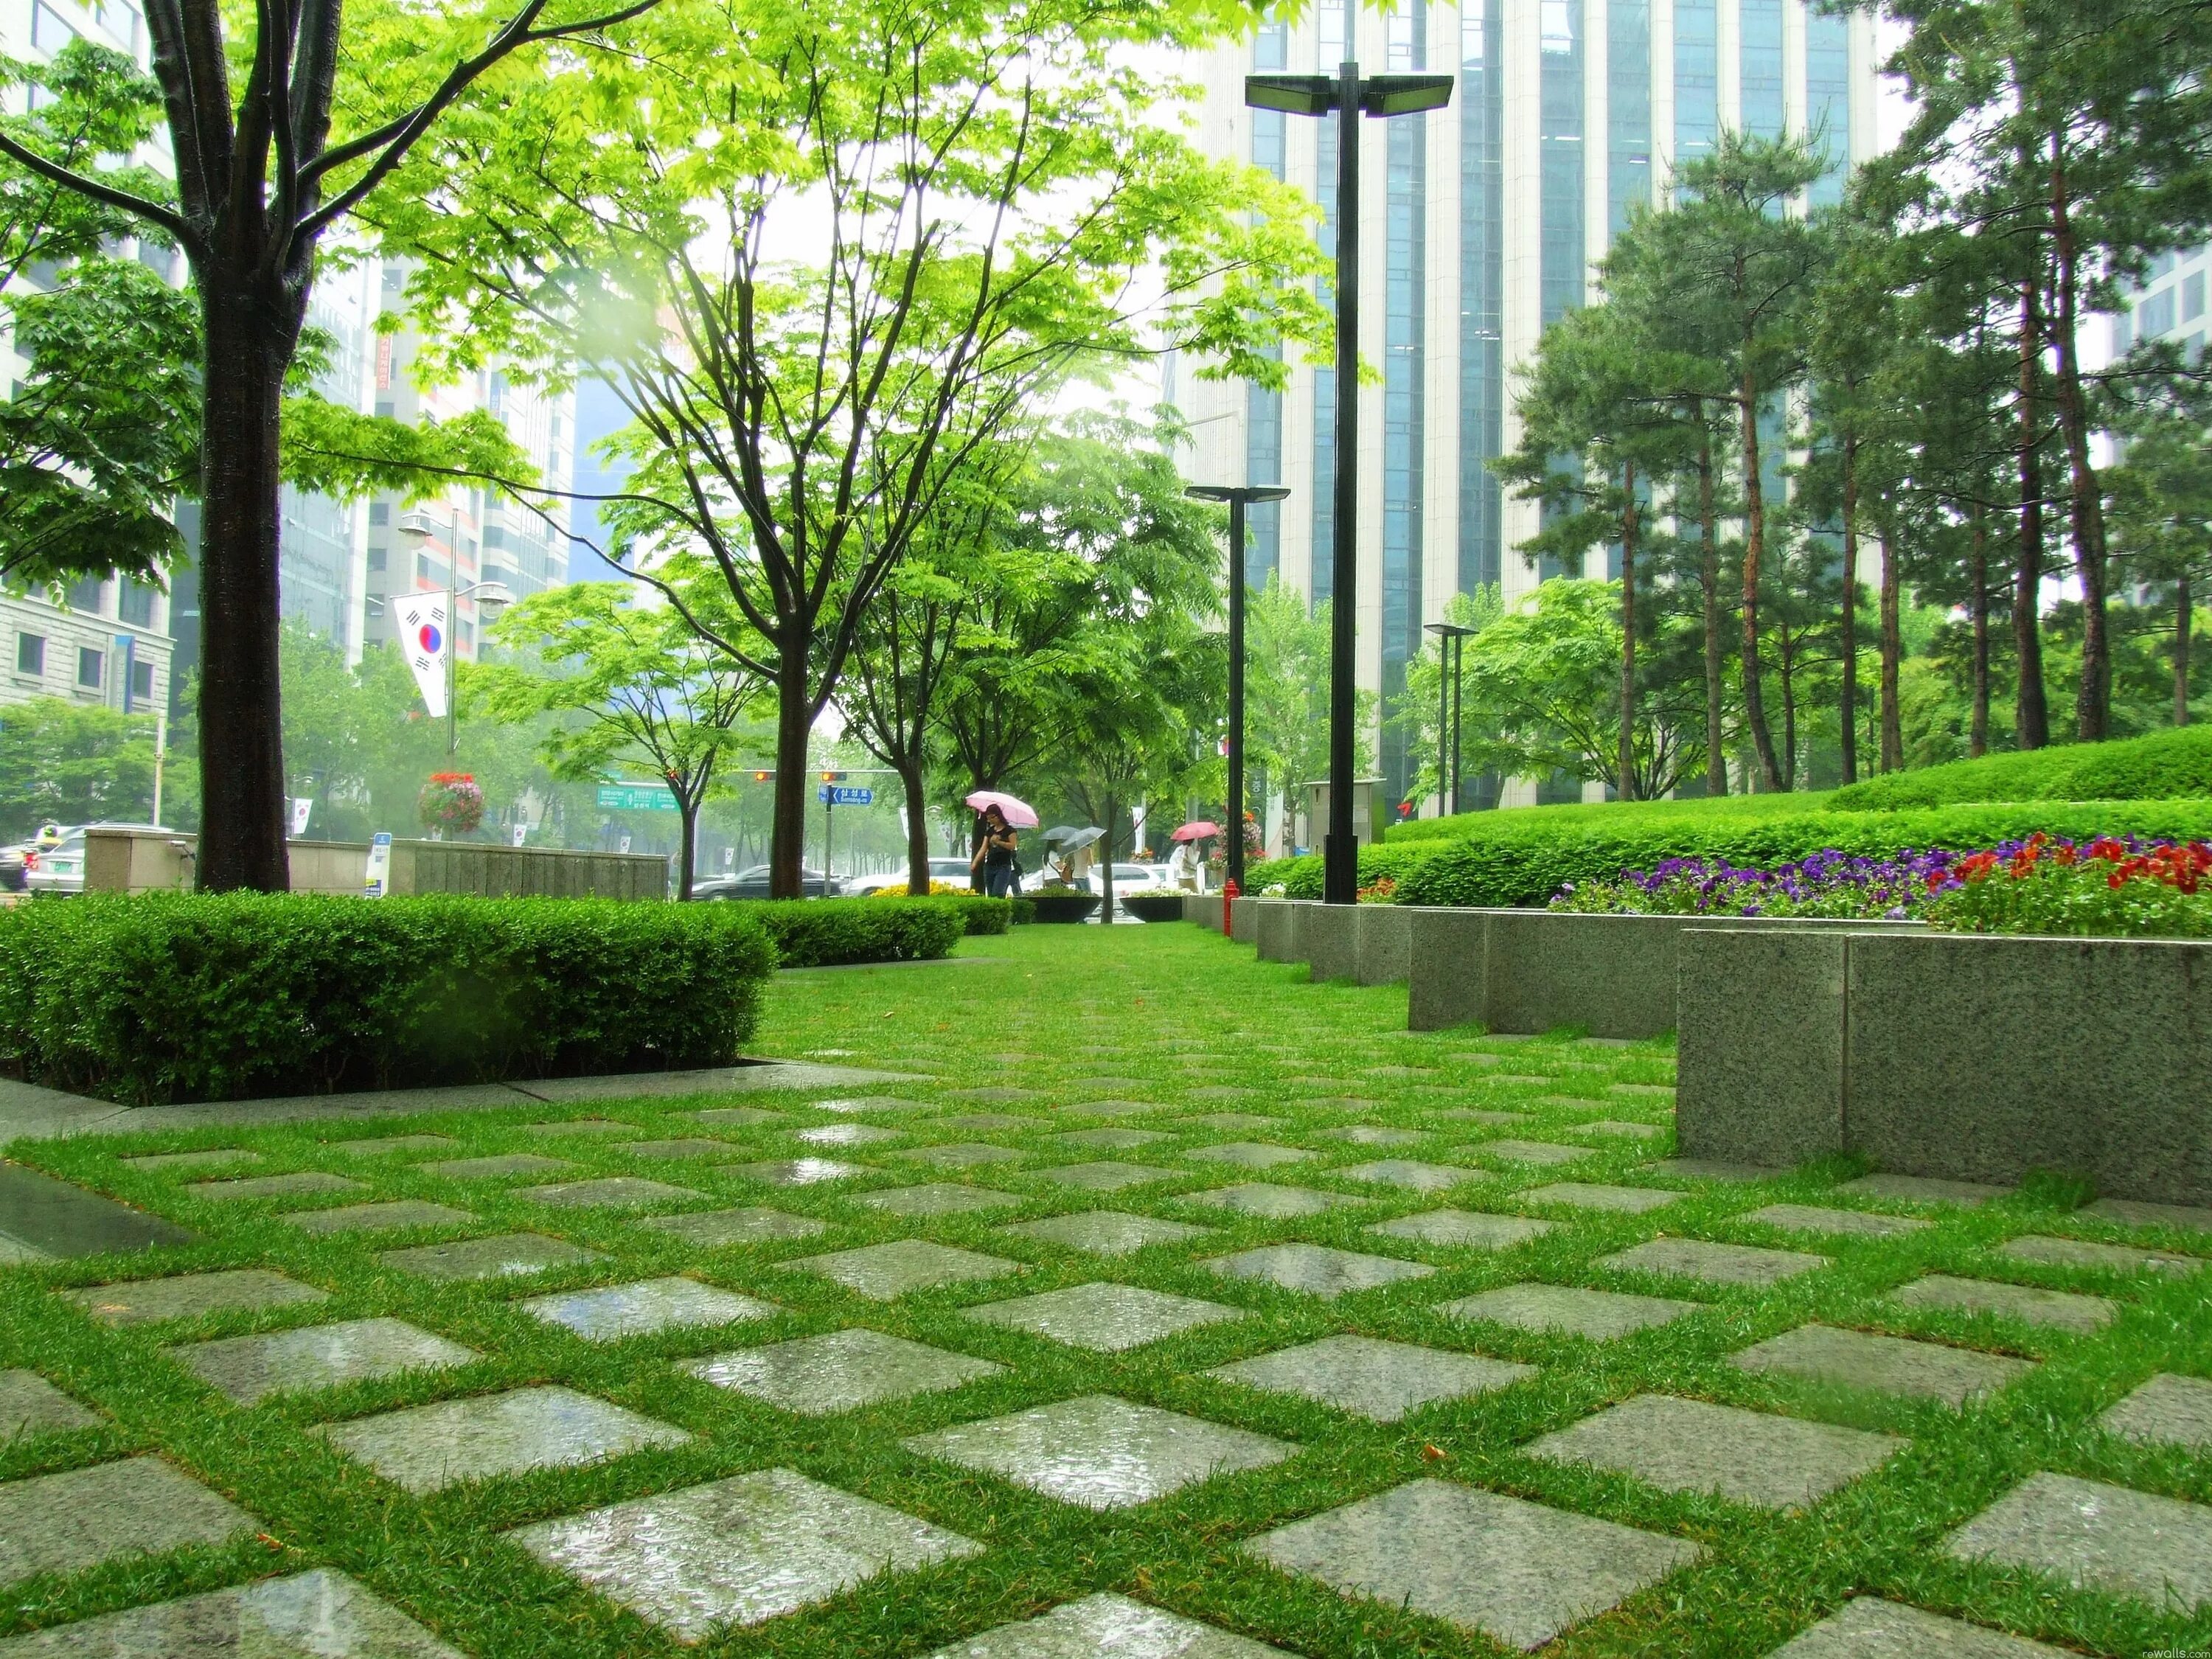 Green Park Озеленение. Сеул Плаза зеленая зона. Парк Сити-сквер. Зеленые зоны в городе.